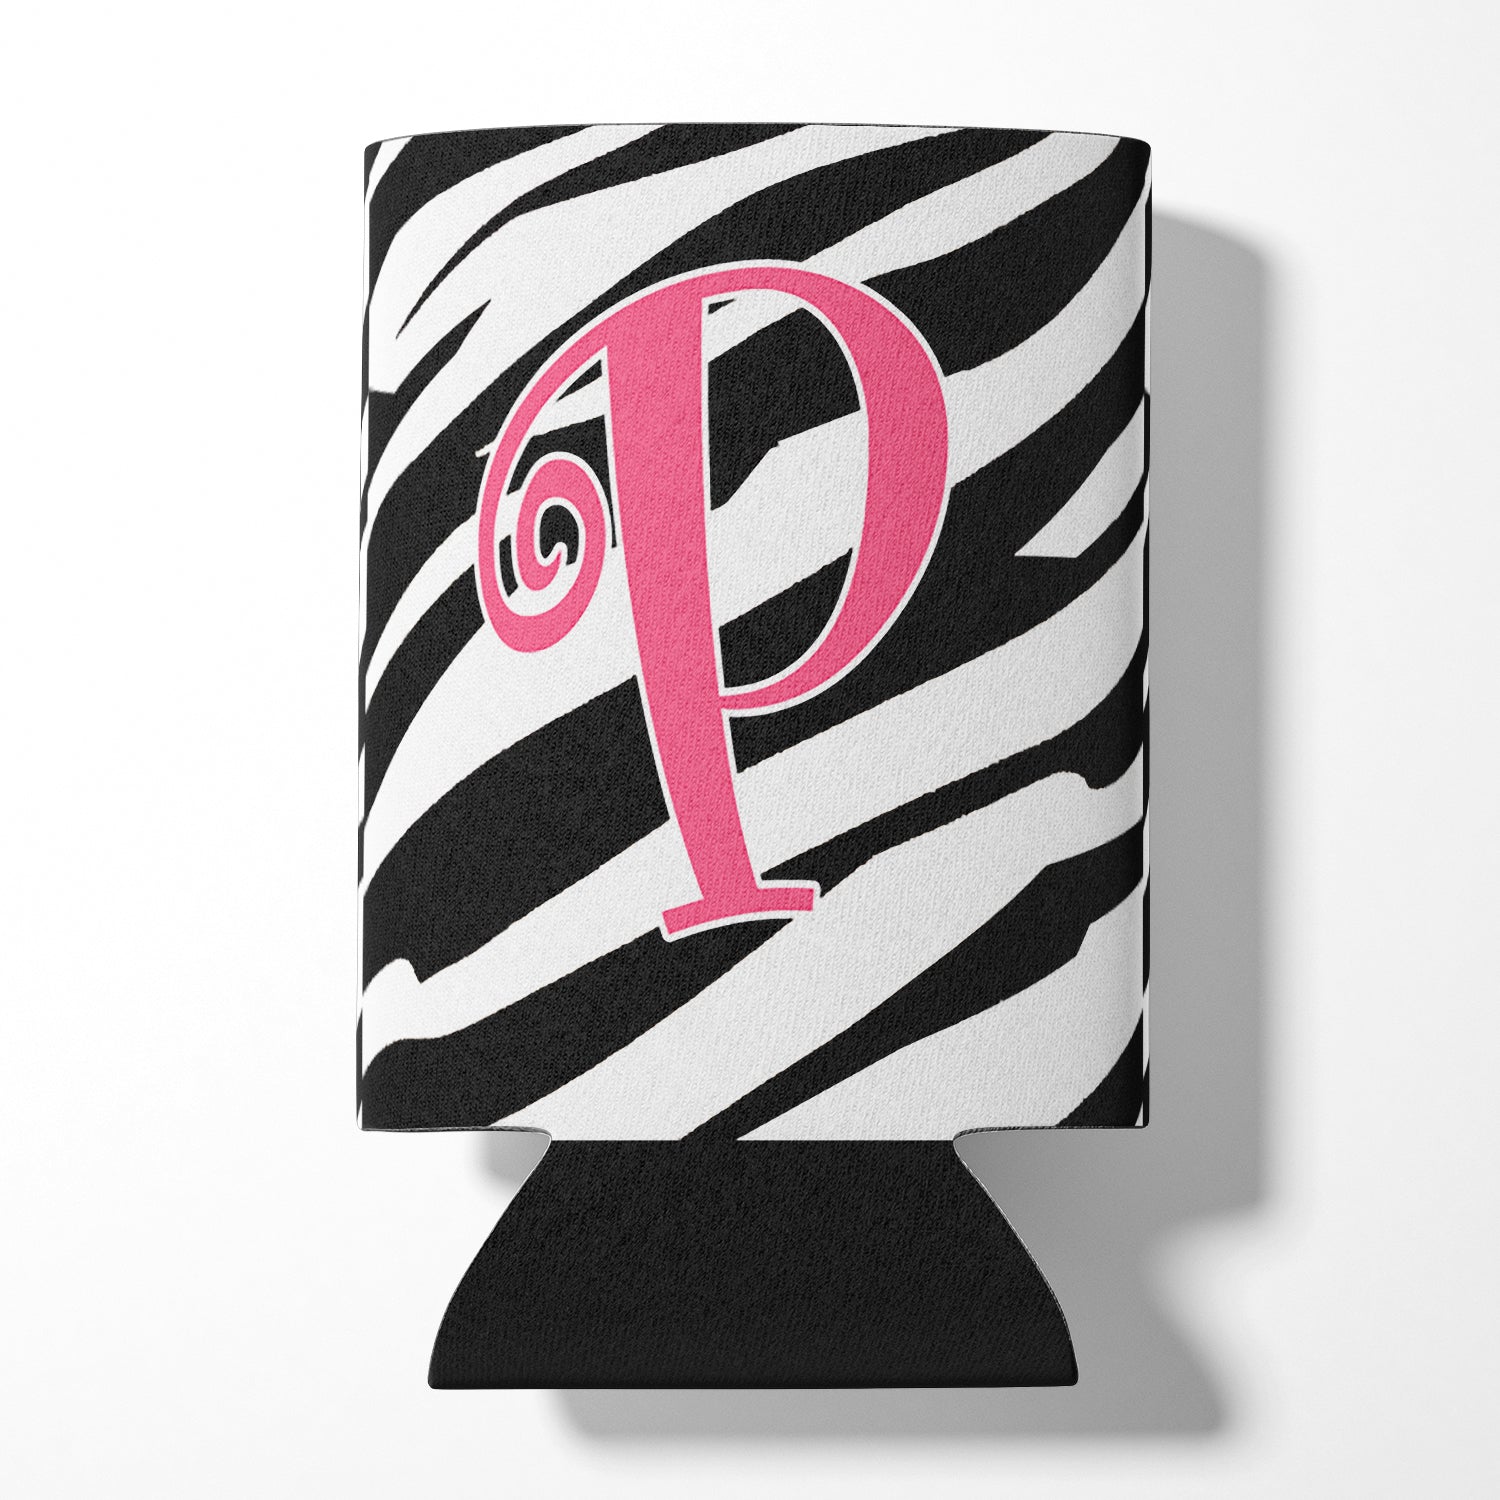 Monogramme initial de la lettre P - Zebra Stripe et Pink Can or Bottle Beverage Insulator Hugger